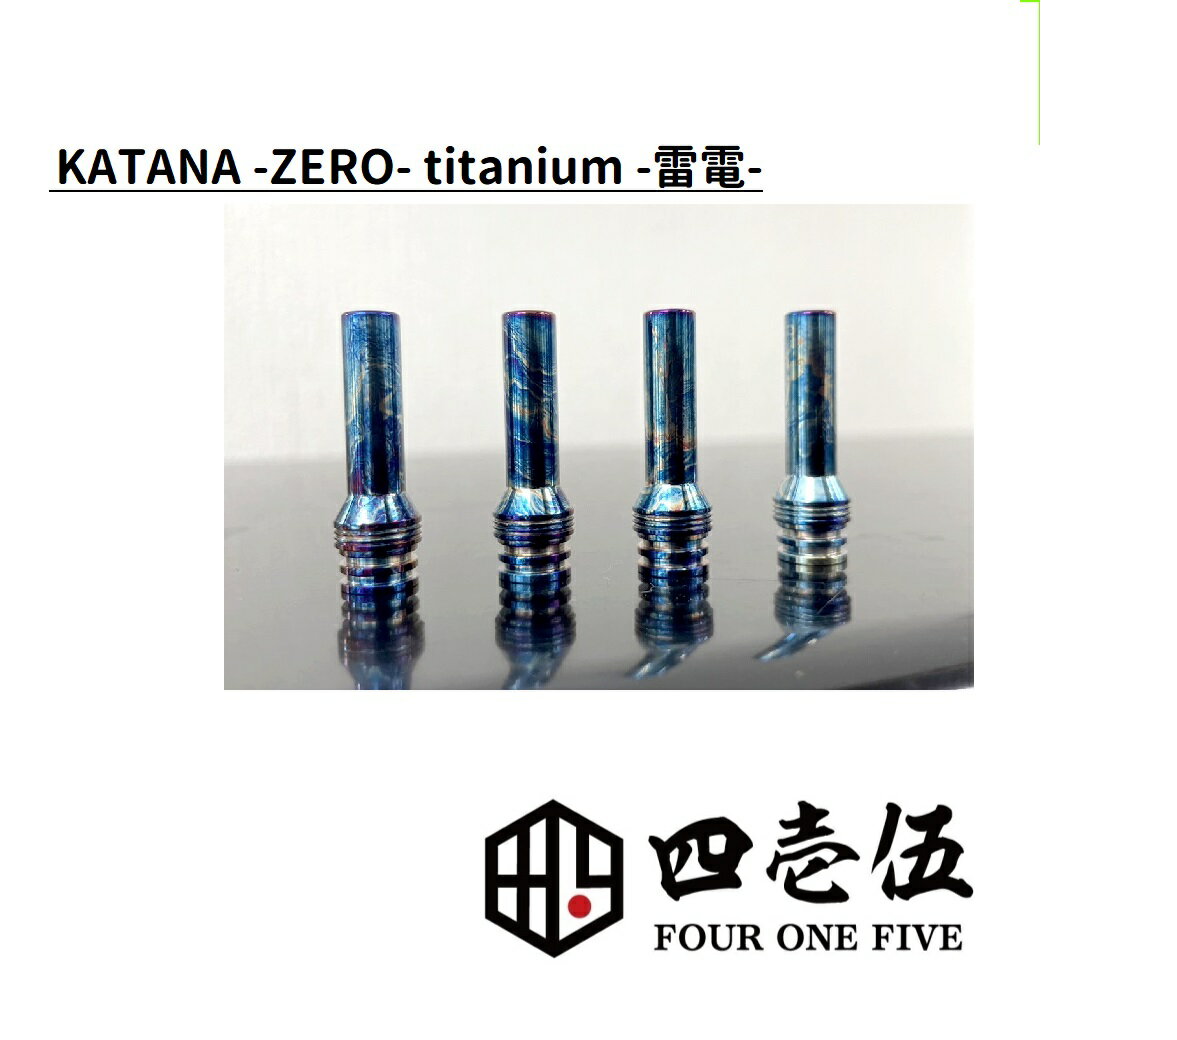 スーパーゲリラ【雷電】KATANA -ZERO- RAIDEN TITANIUM チタン ドリップチップ カタナ 510規格 FOUR ONE FIVE 415 フ…